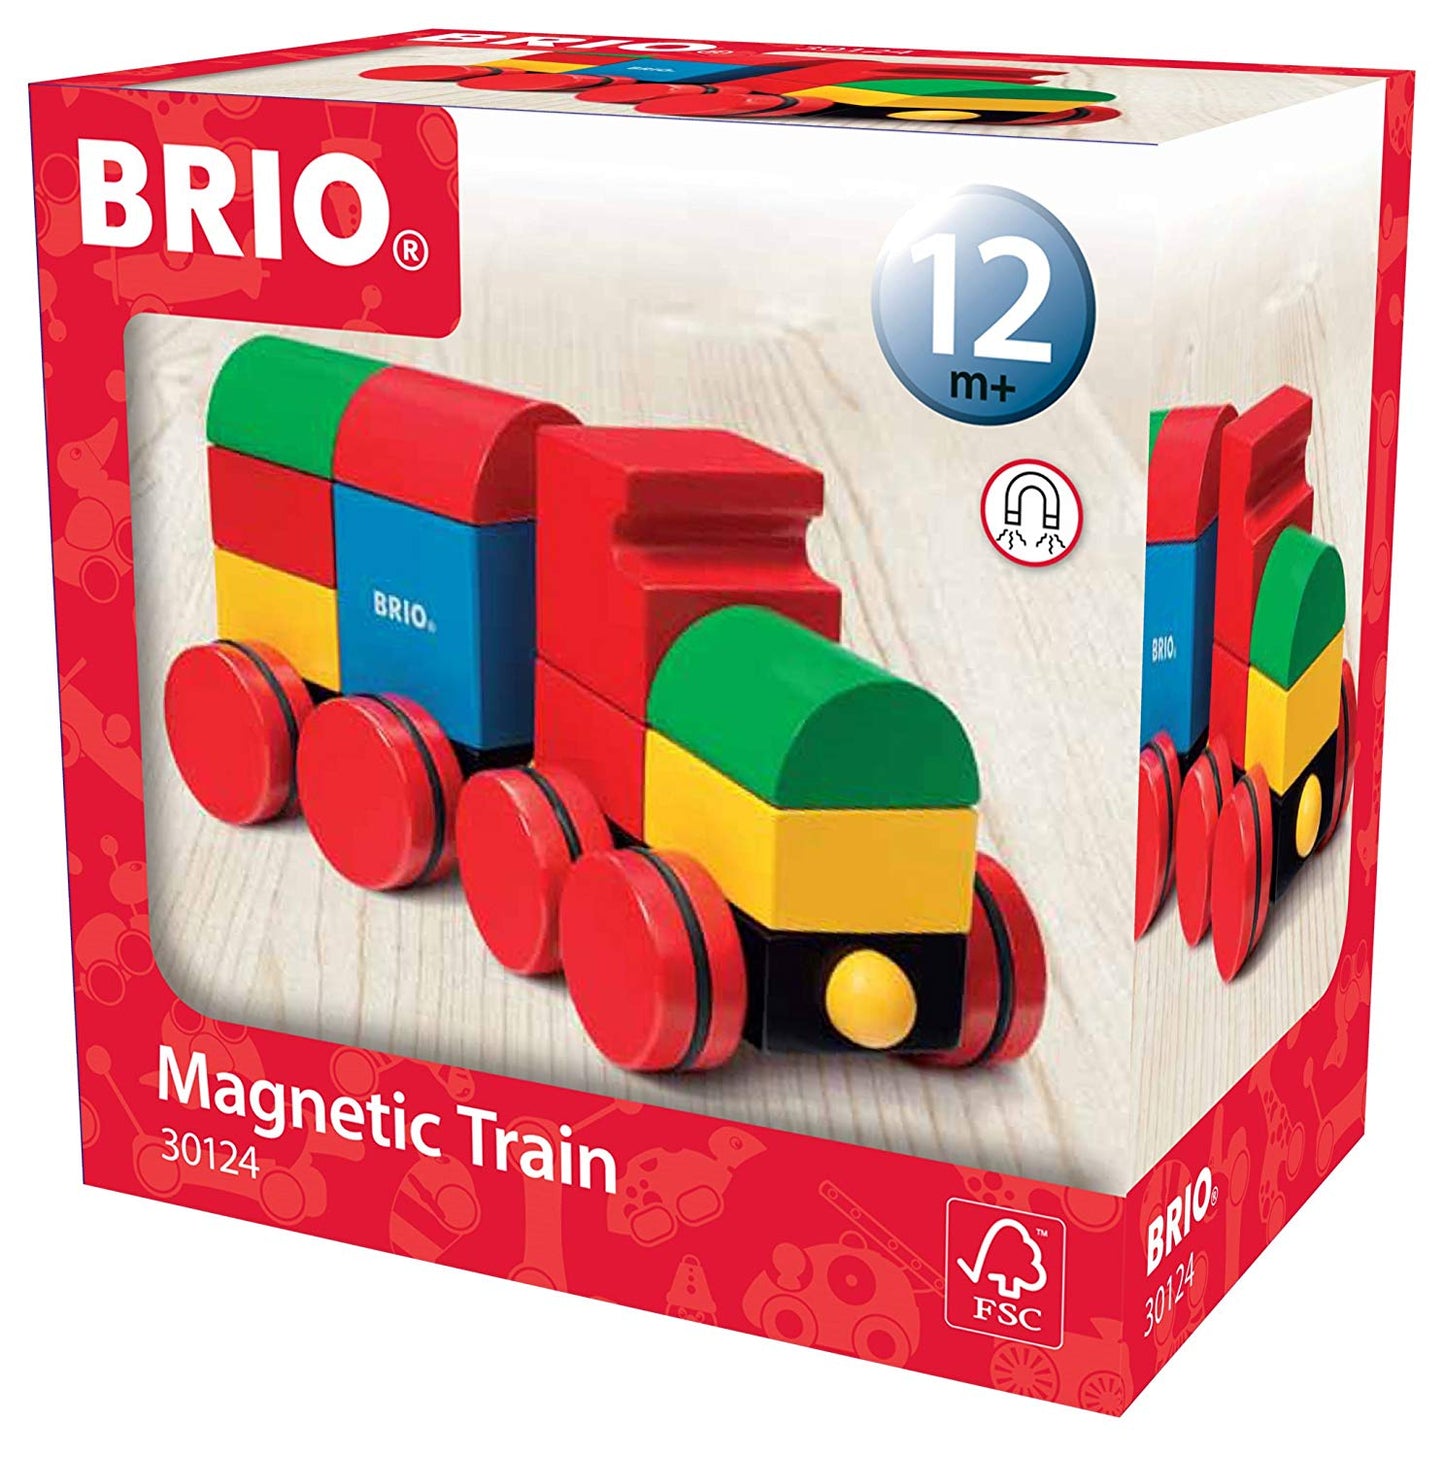 Brio Magnetic